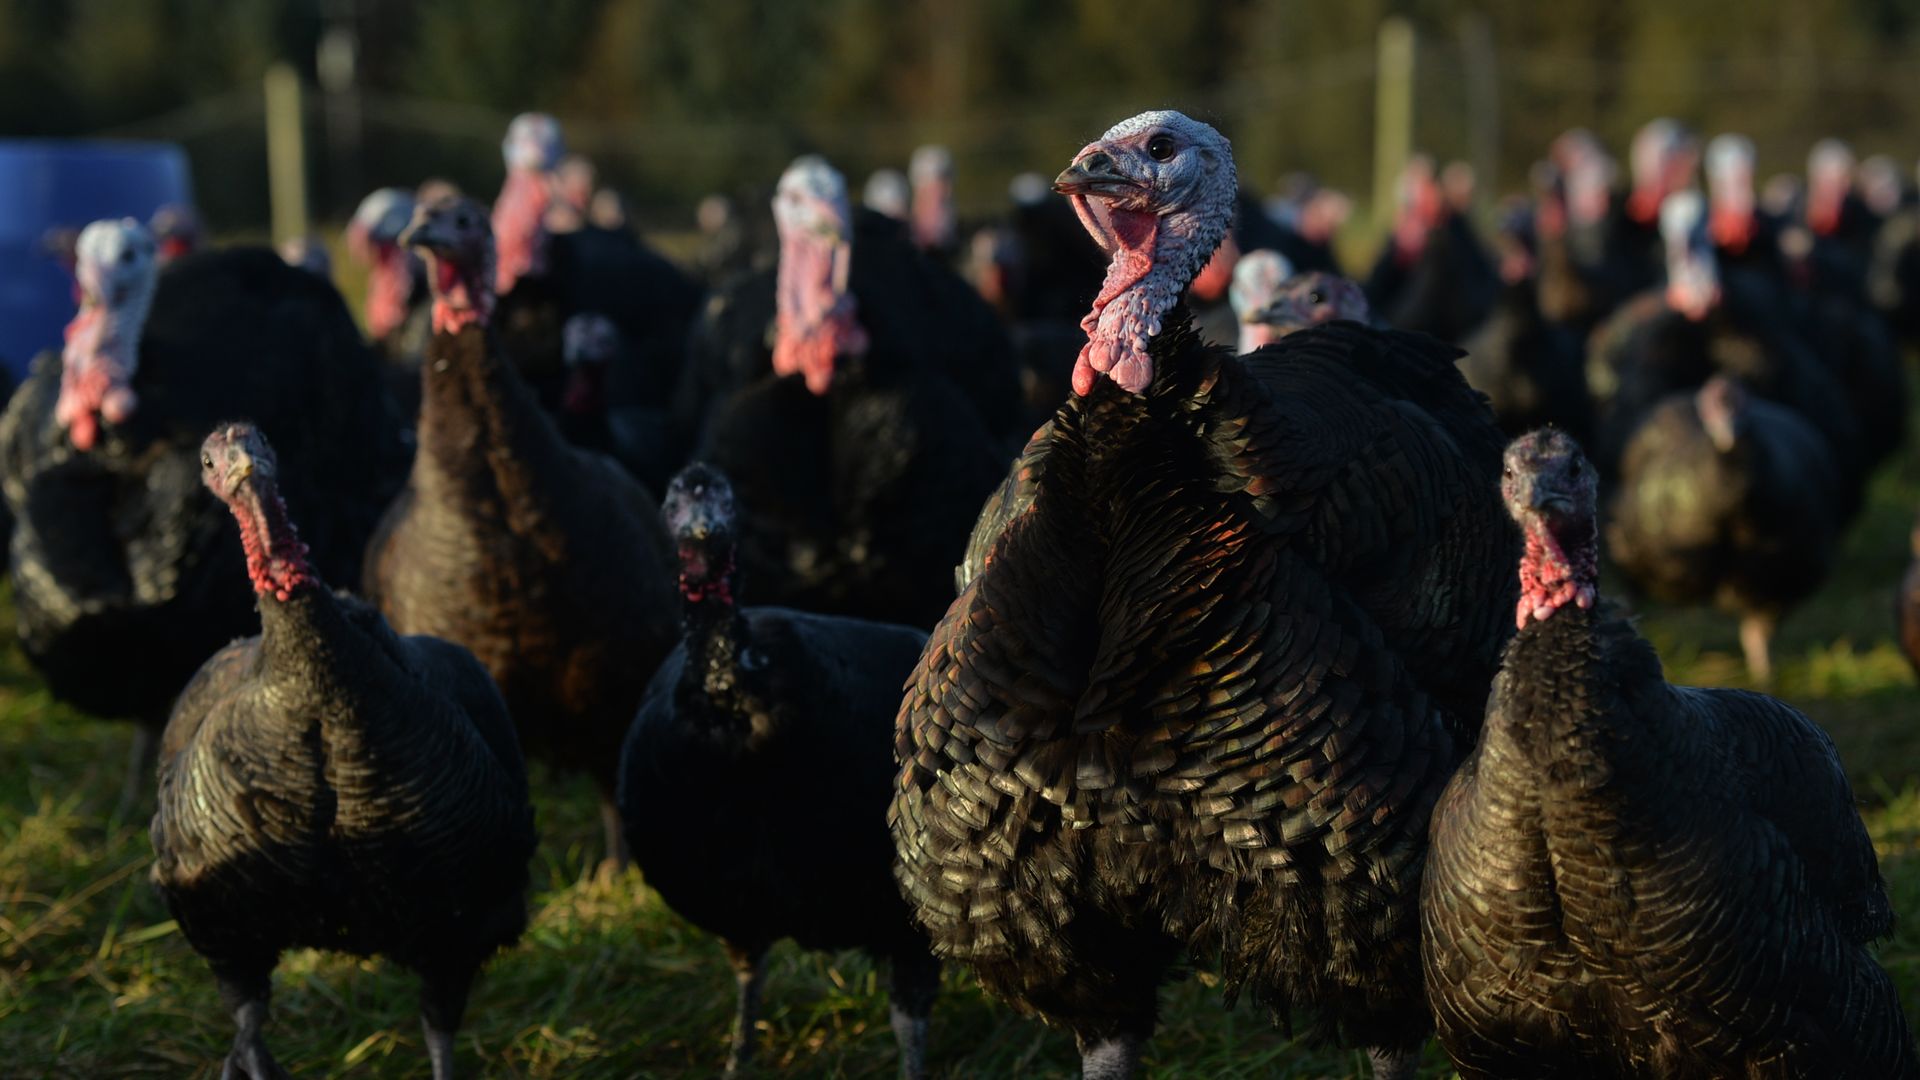 Turkeys at a turkey farm